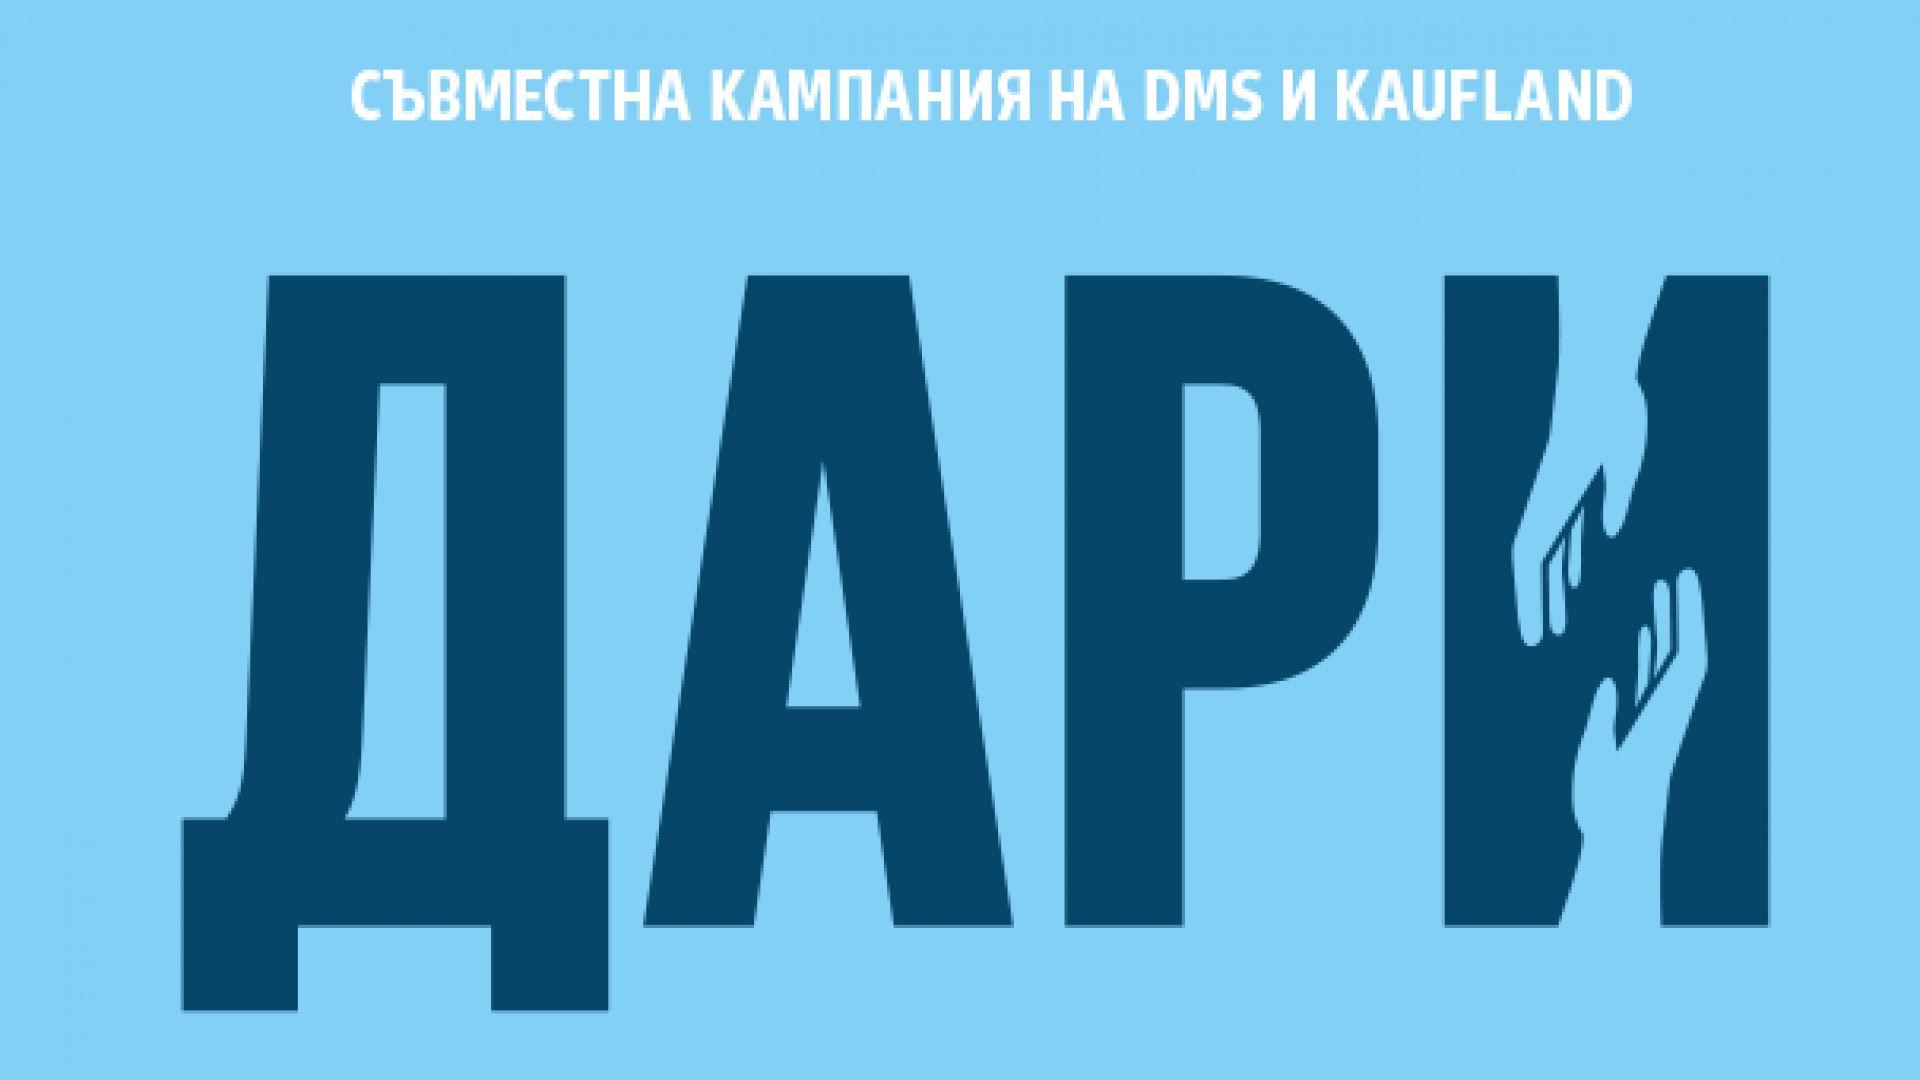 Kaufland България и дарителската платформа DMS започват съвместна дарителска инициатива